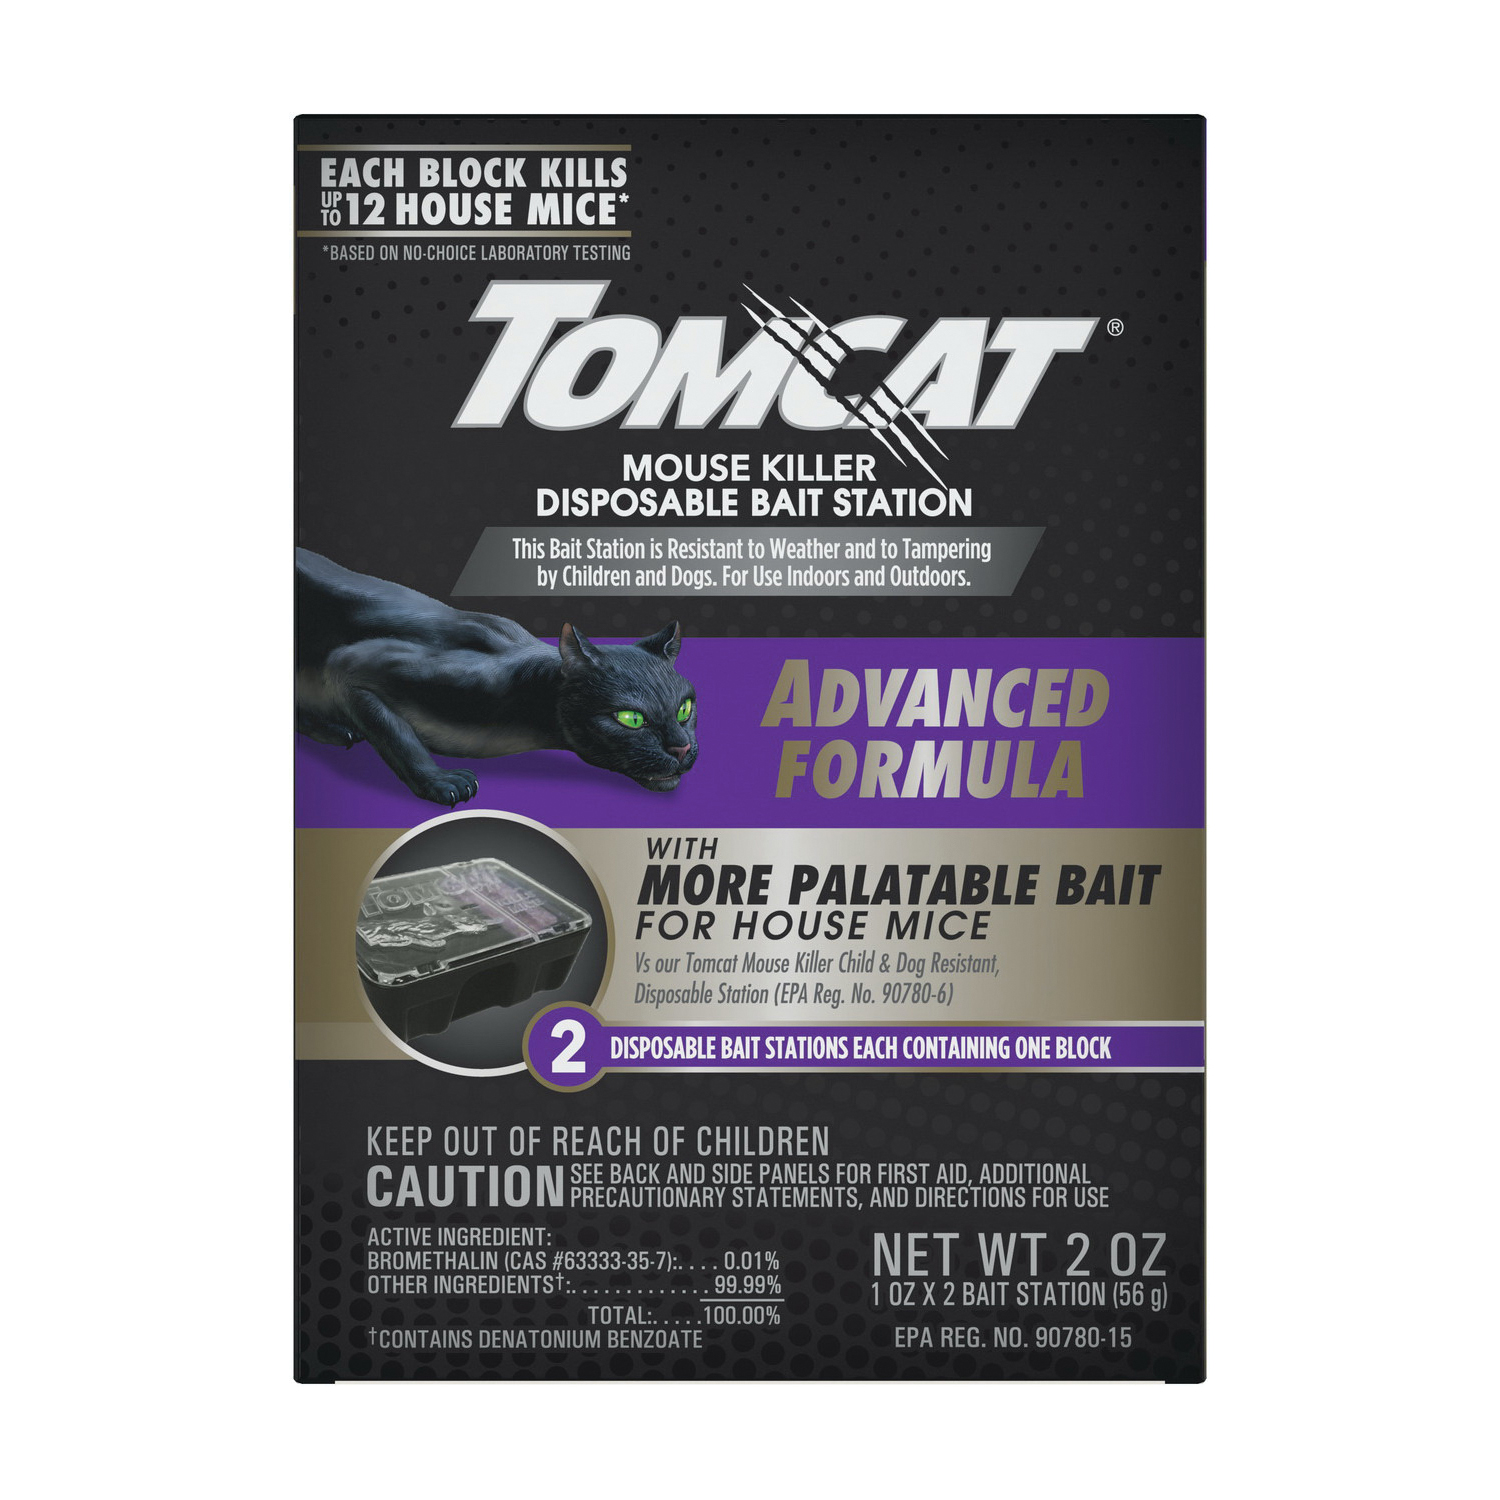 Tomcat 0373805 Mouse Killer Disposable Bait Station, 12 Mice Bait, Purple/Violet